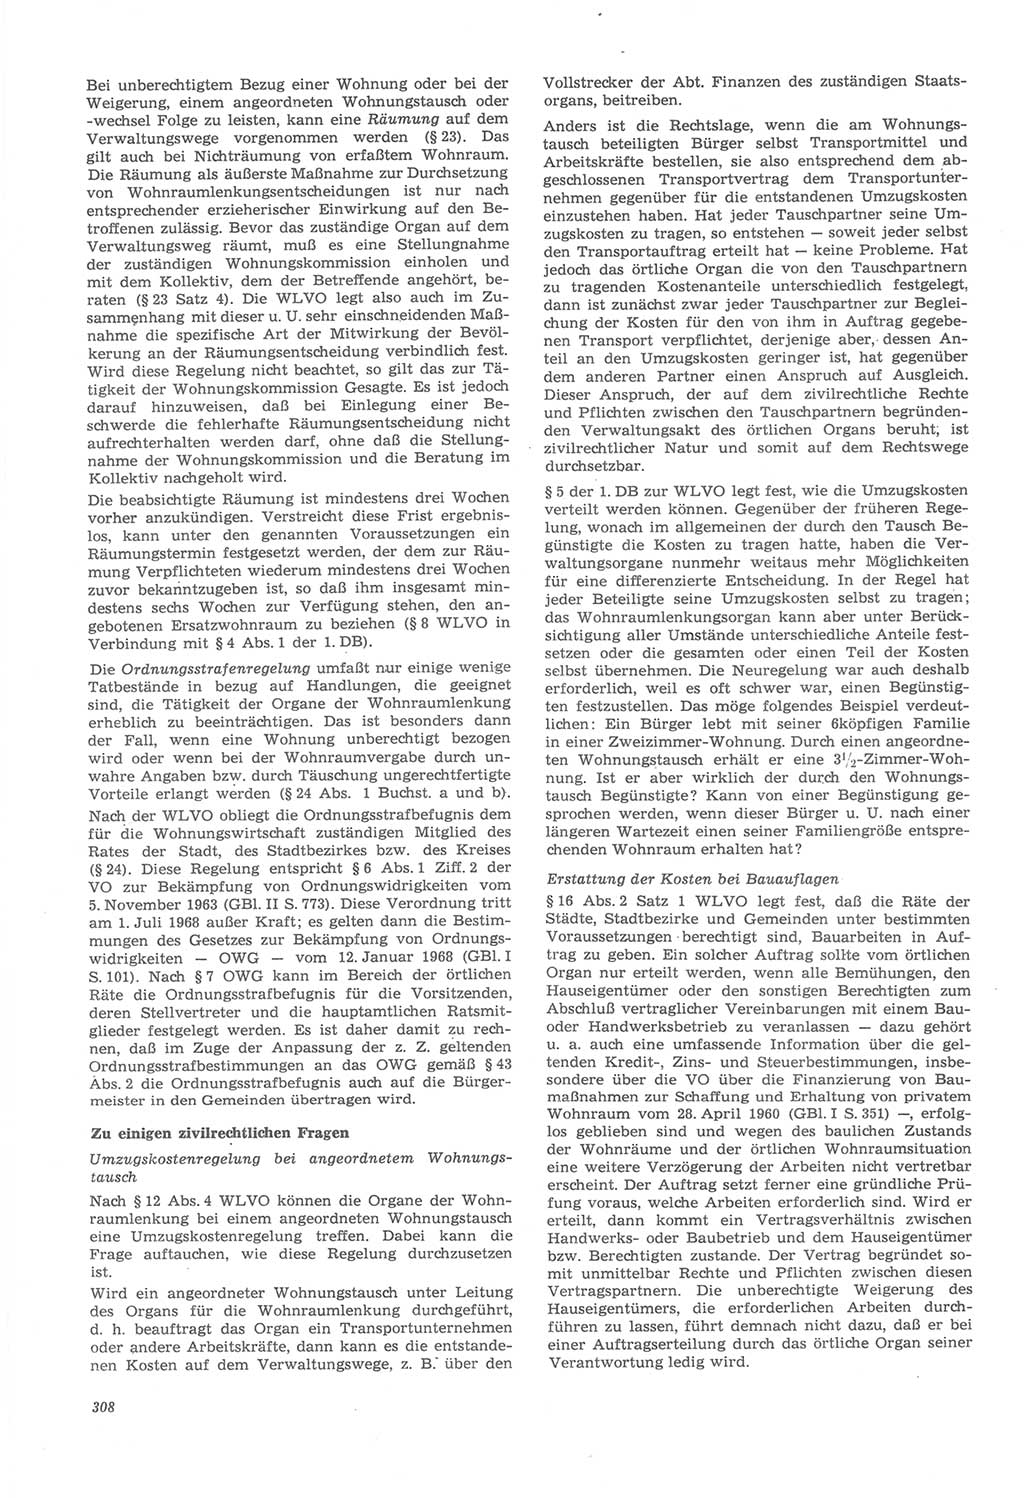 Neue Justiz (NJ), Zeitschrift für Recht und Rechtswissenschaft [Deutsche Demokratische Republik (DDR)], 22. Jahrgang 1968, Seite 308 (NJ DDR 1968, S. 308)